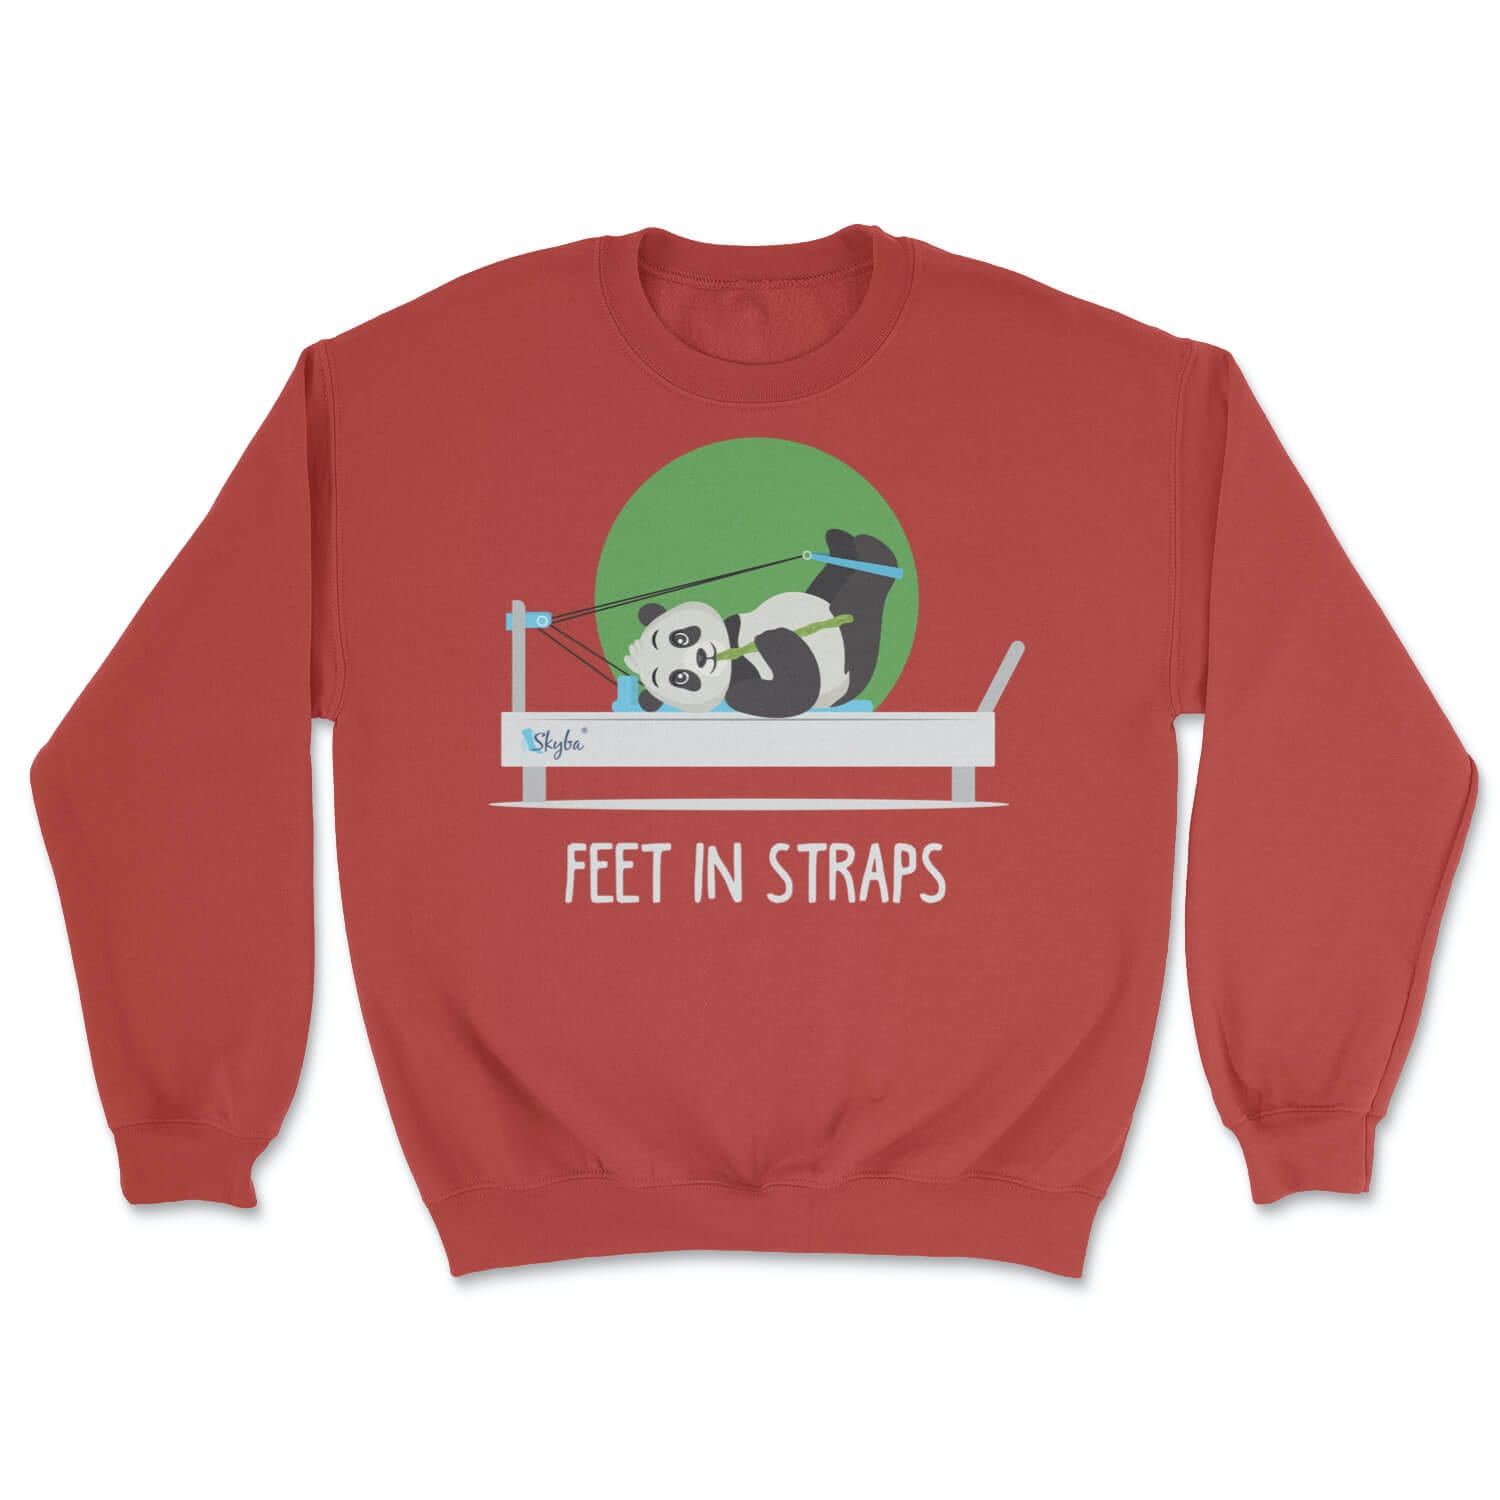 "Feet in Straps" Panda on Reformer - Cozy Crewneck Sweatshirt Skyba Sweatshirt